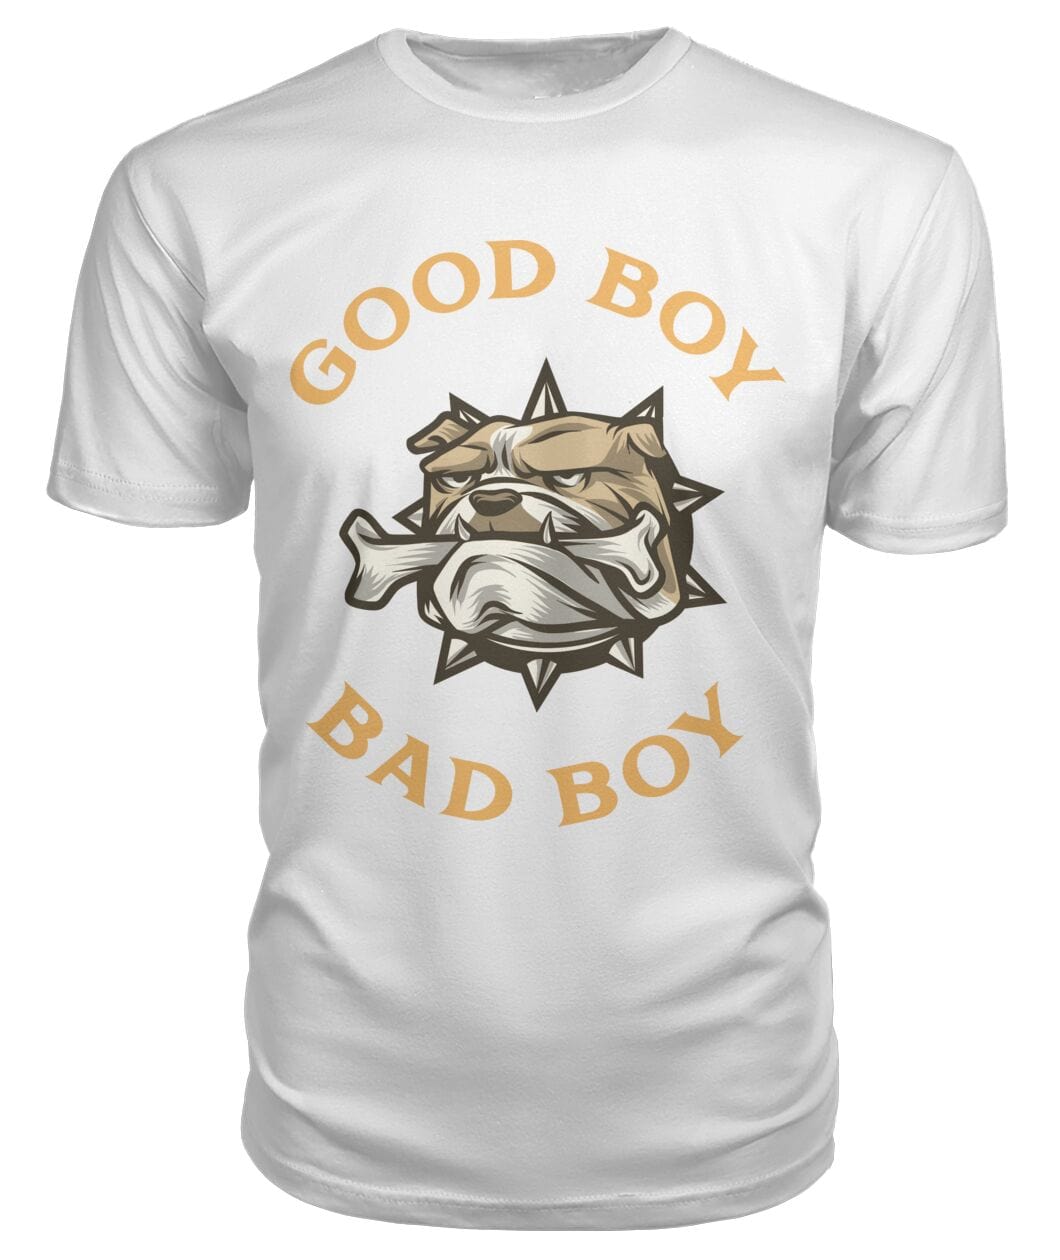 Tricou Good boy Bad boy